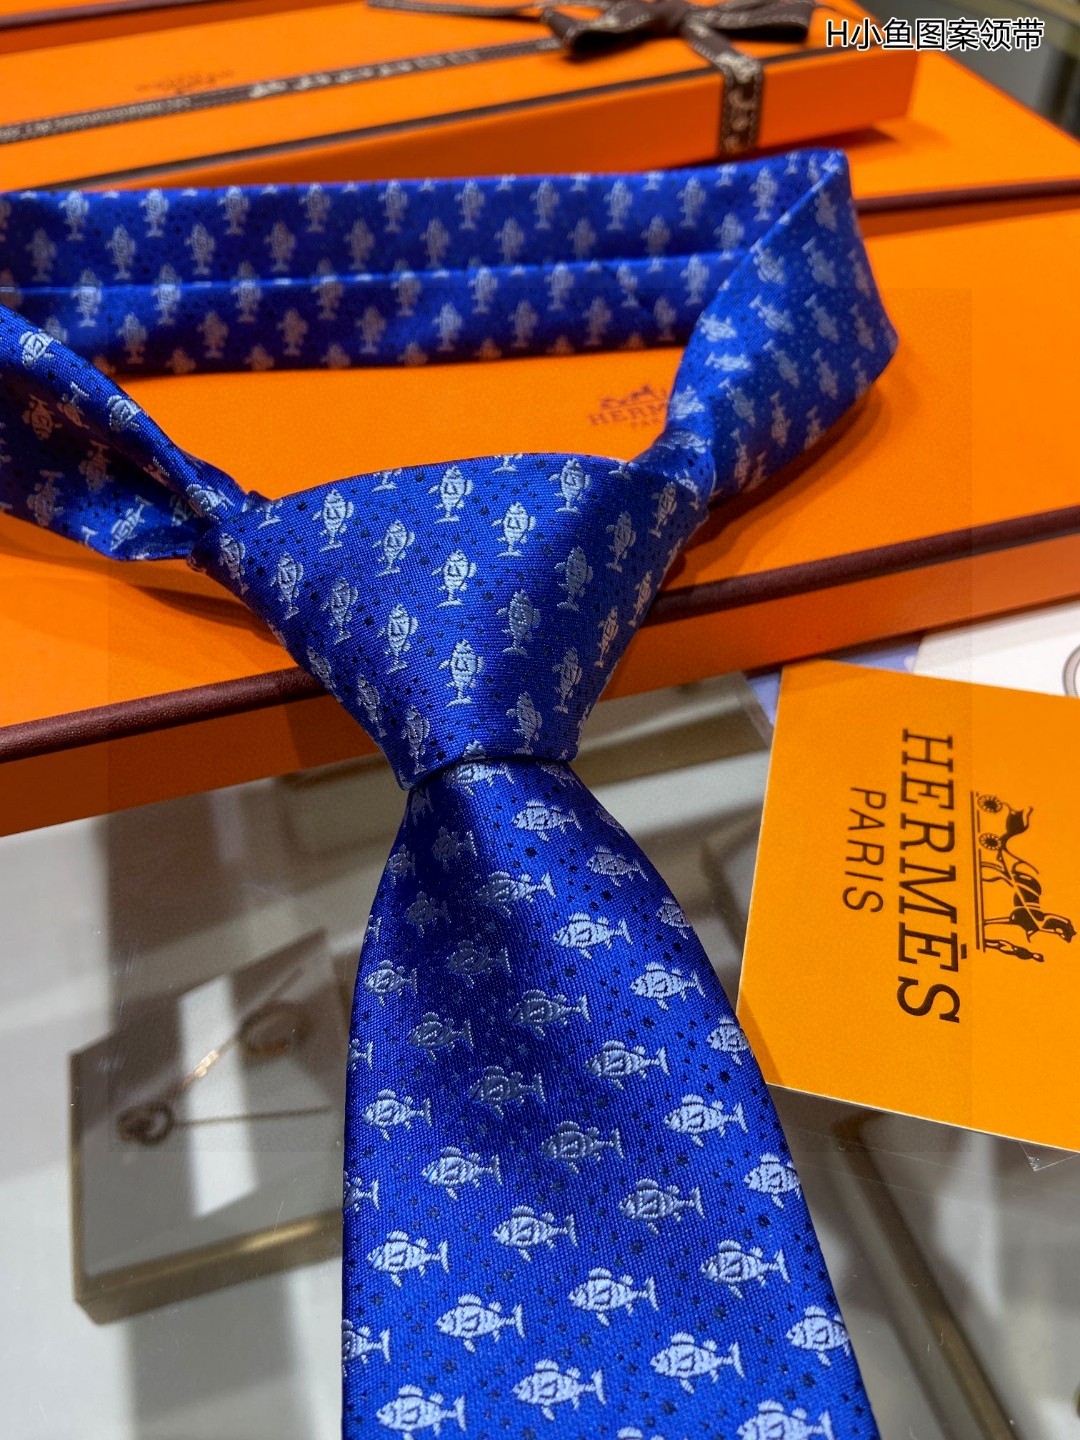 特价男士新款领带系列H小鱼图案领带稀有H家每年都有一千条不同印花的领带面世从最初的多以几何图案表现骑术活